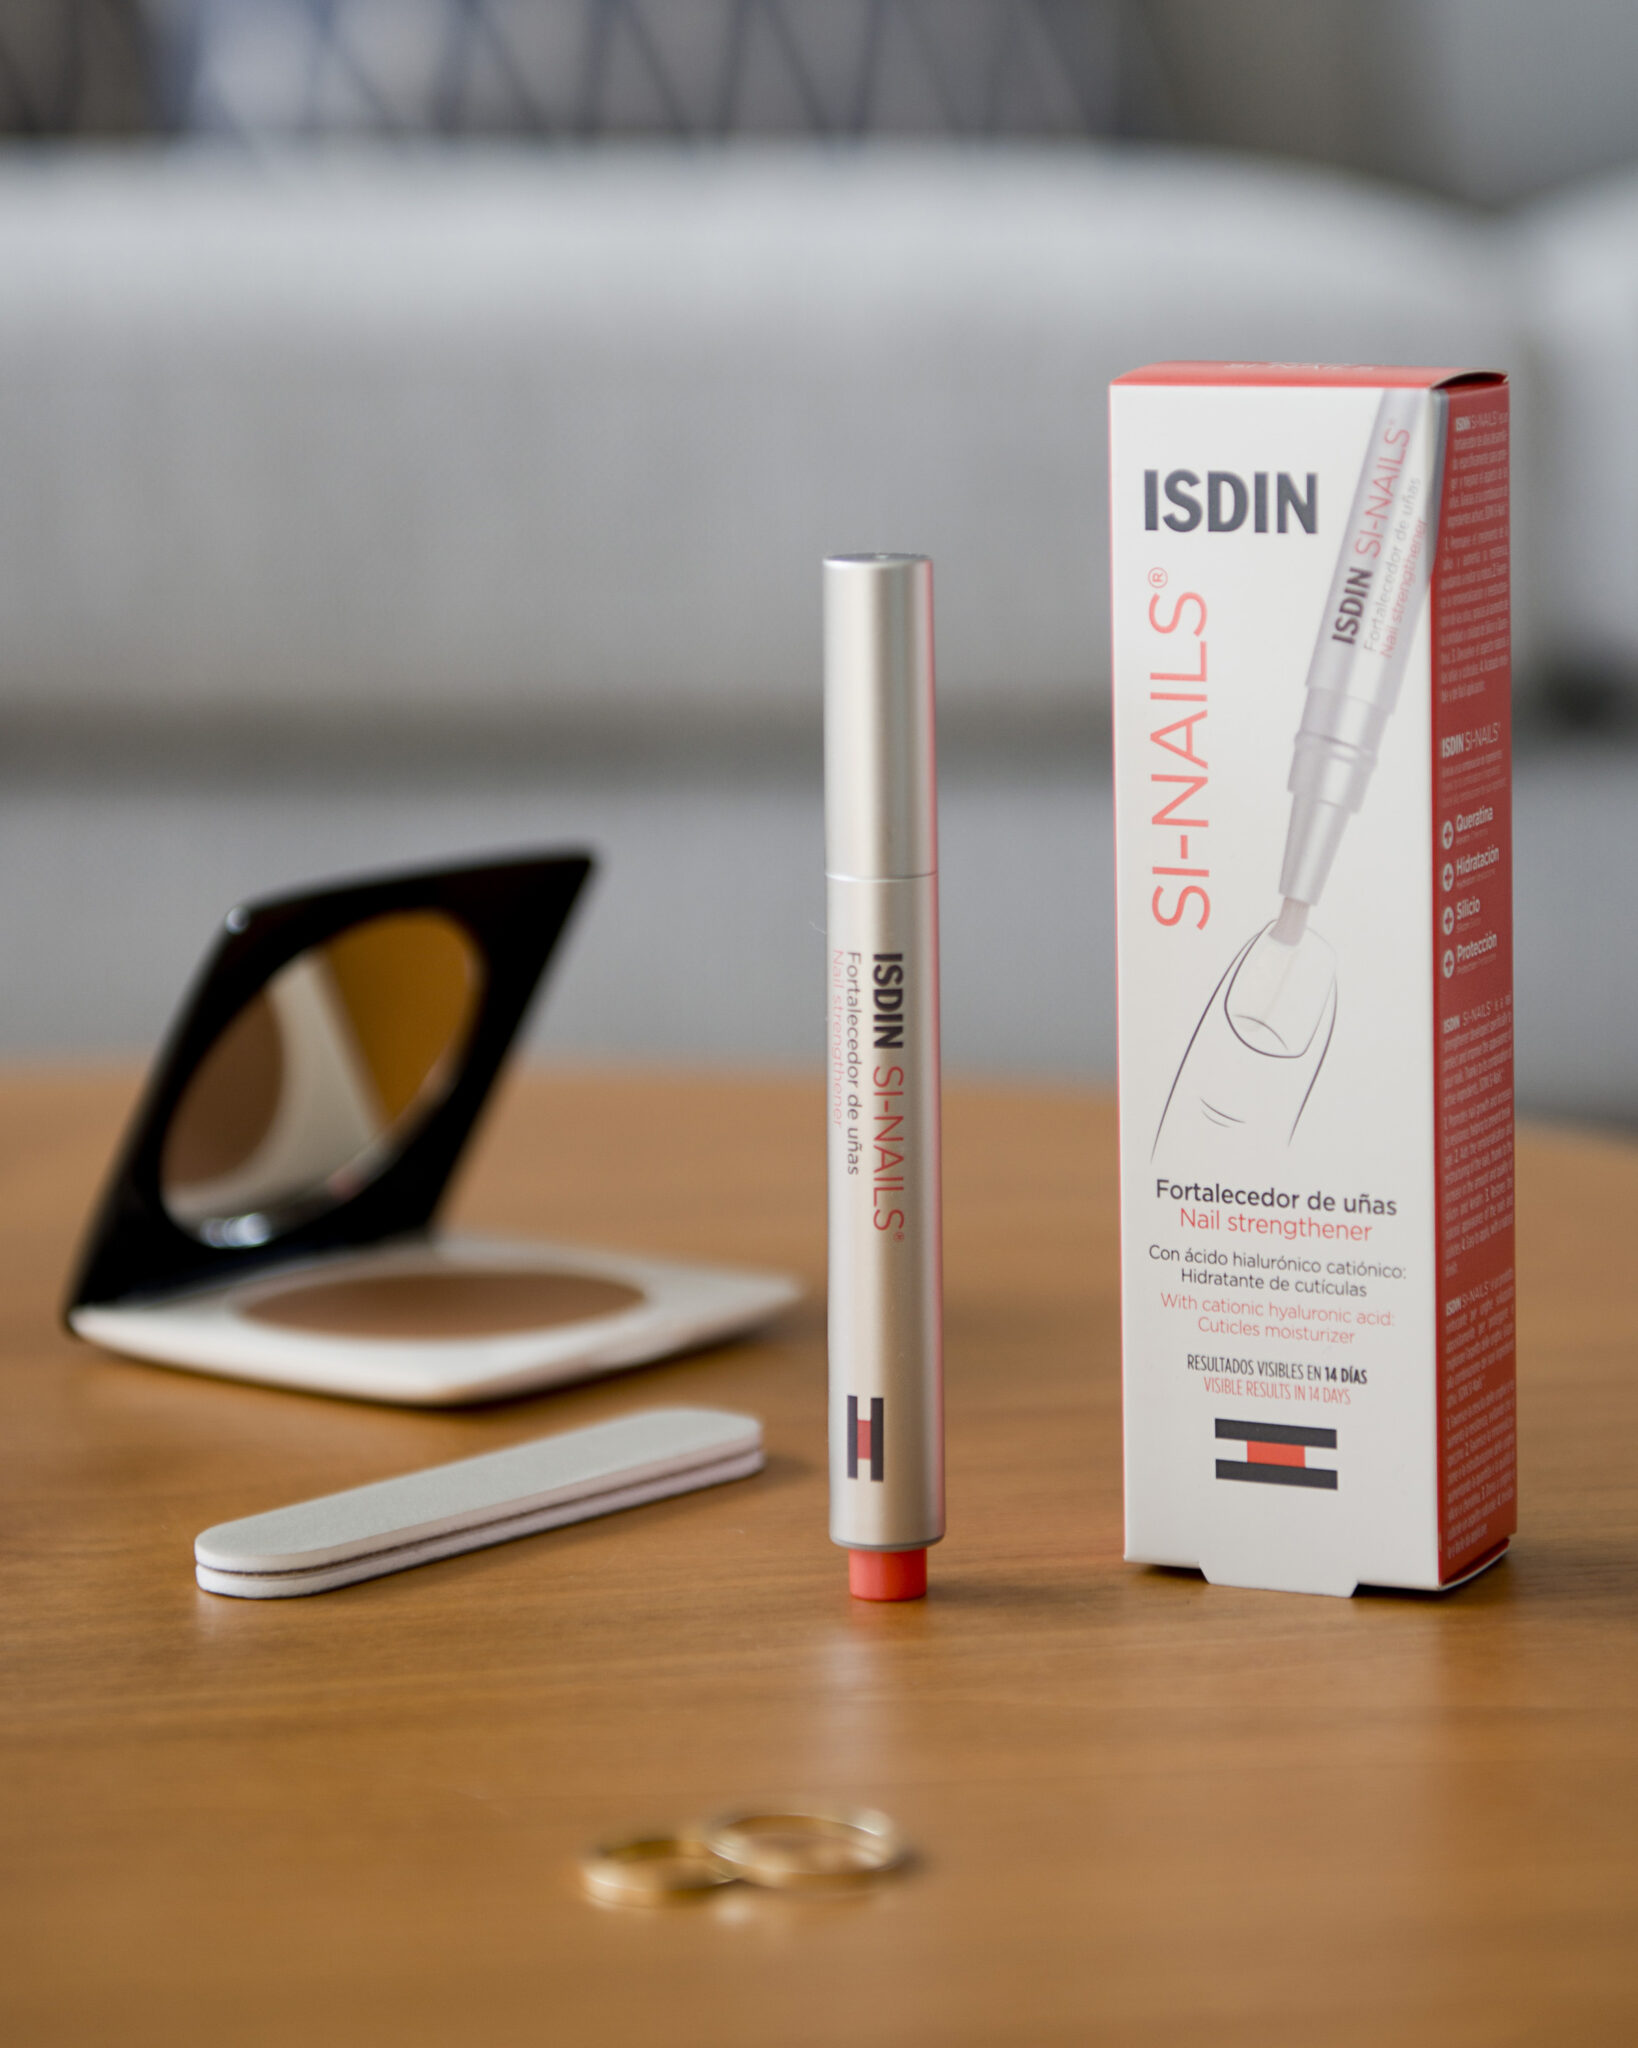 Isdin Costa Rica - Para el cuidado específico de las uñas ISDIN presenta el  fortalecedor de uñas ISDIN Si-Nails. Su formato en forma de click pen  permite una fácil y cómoda aplicación